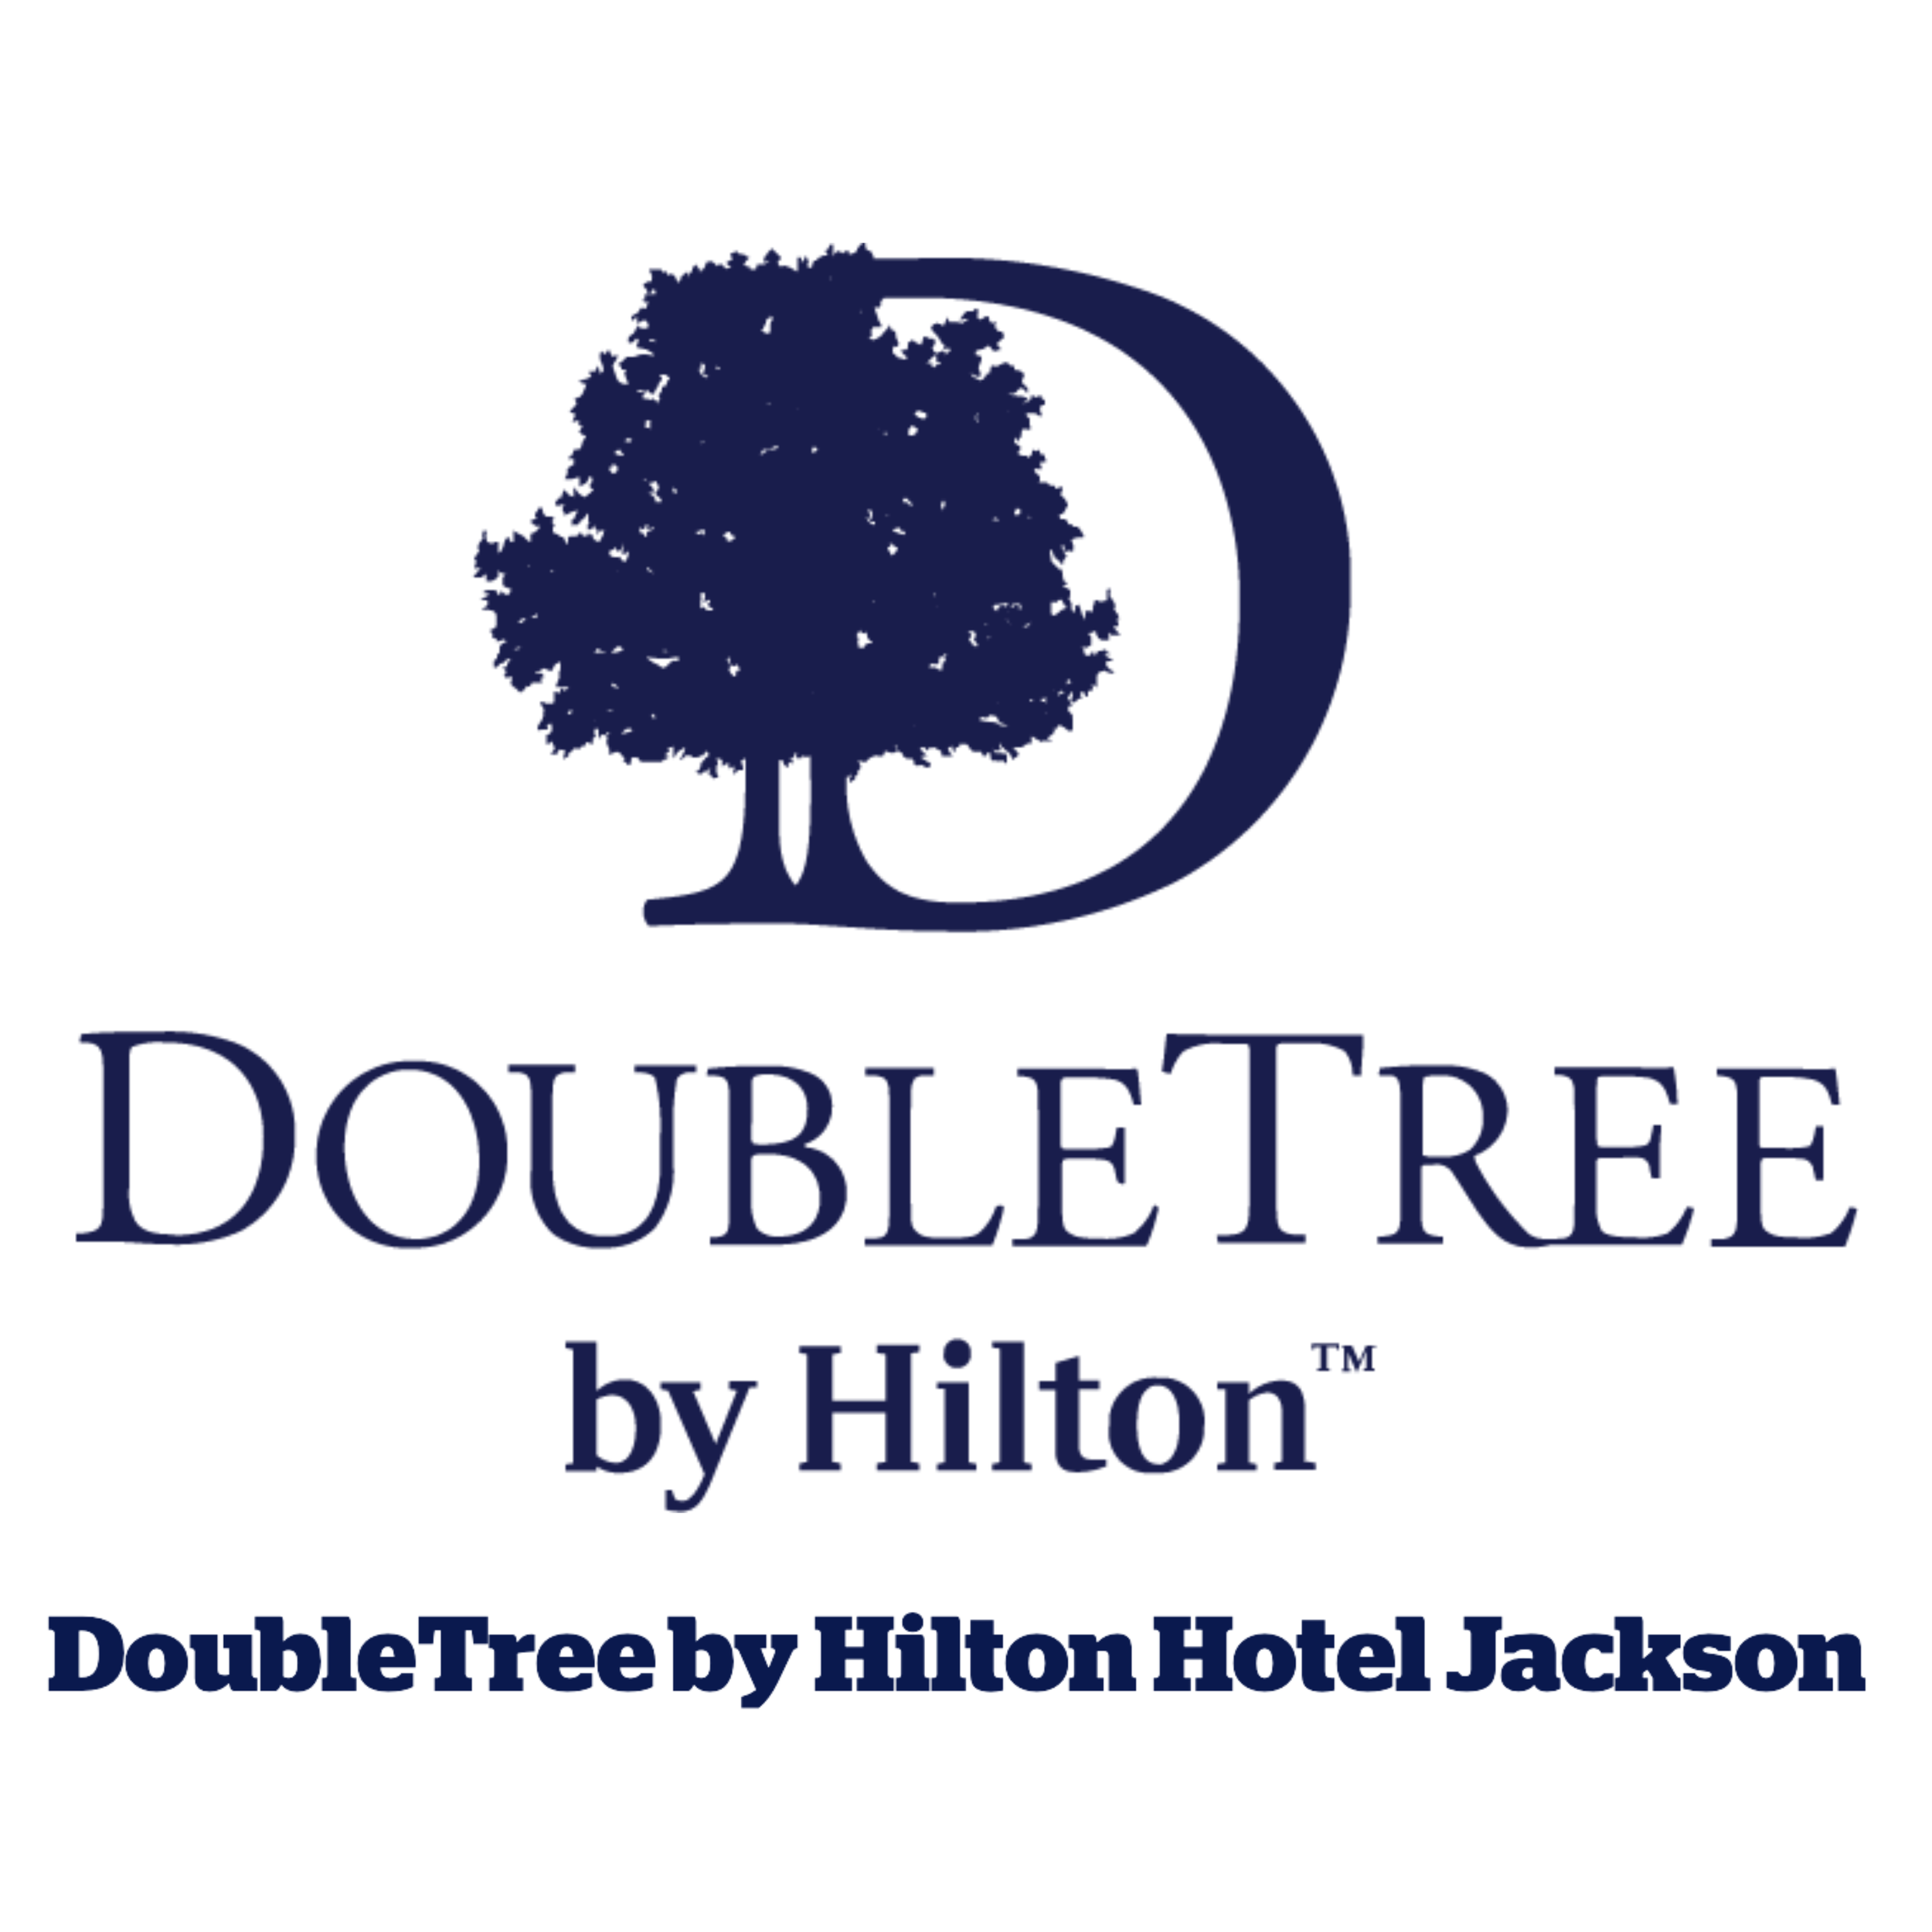 Doubletree Hilton Logo.png